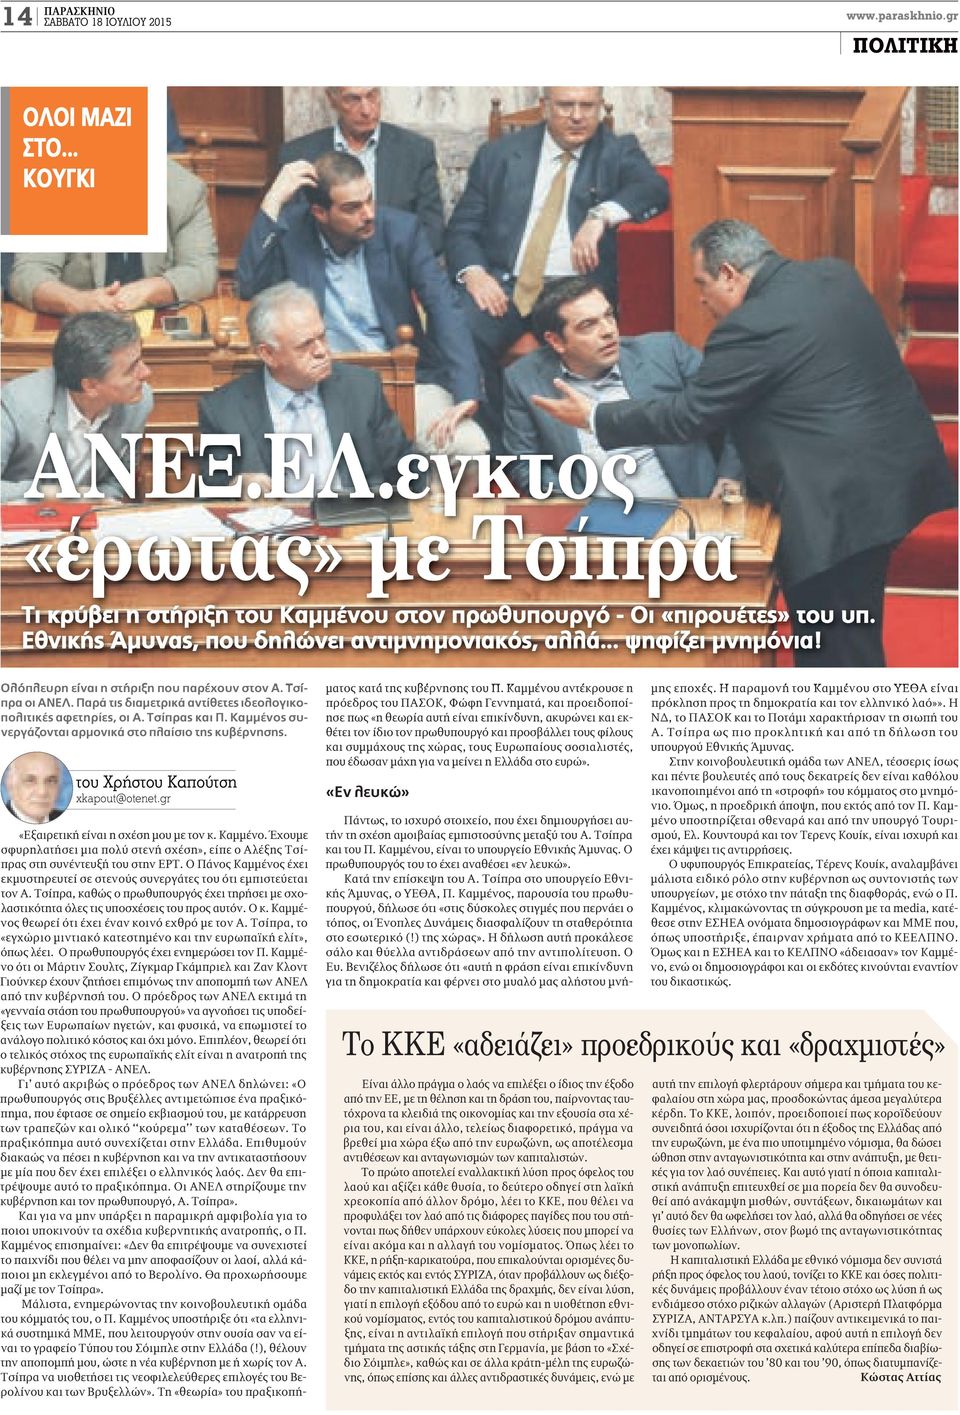 Τσίπρας και Π. Καμμένος συνεργάζονται αρμονικά στο πλαίσιο της κυβέρνησης. του Χρήστου Καπούτση xkapout@otenet.gr «Εξαιρετική είναι η σχέση μου με τον κ. Καμμένο. Έχουμε σφυρηλατήσει μια πολύ στενή σχέση», είπε ο Αλέξης Τσίπρας στη συνέντευξή του στην ΕΡΤ.